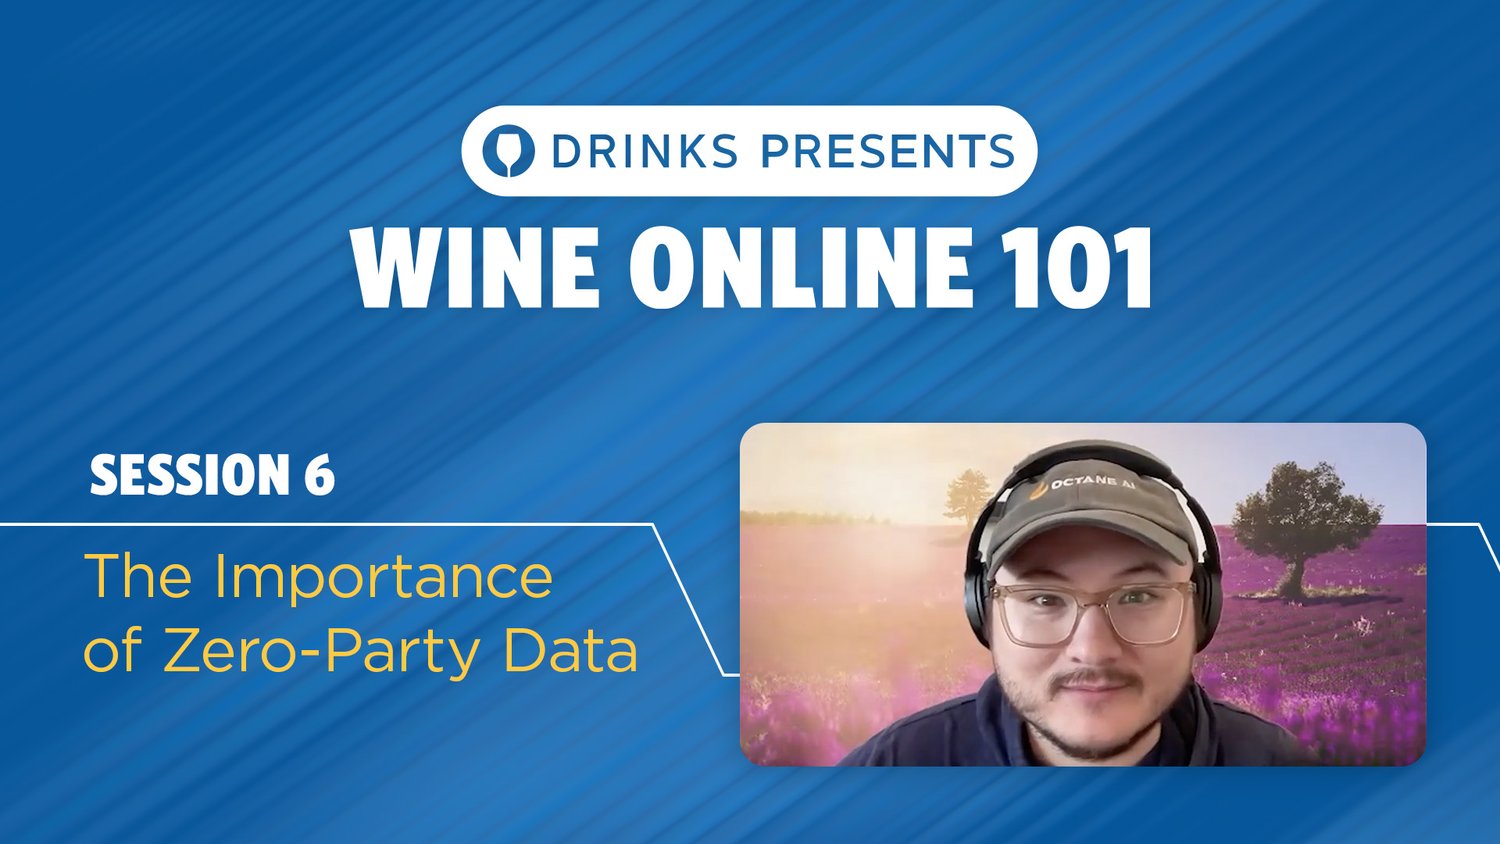 drinks-wine-online-101-title-slide-session-06